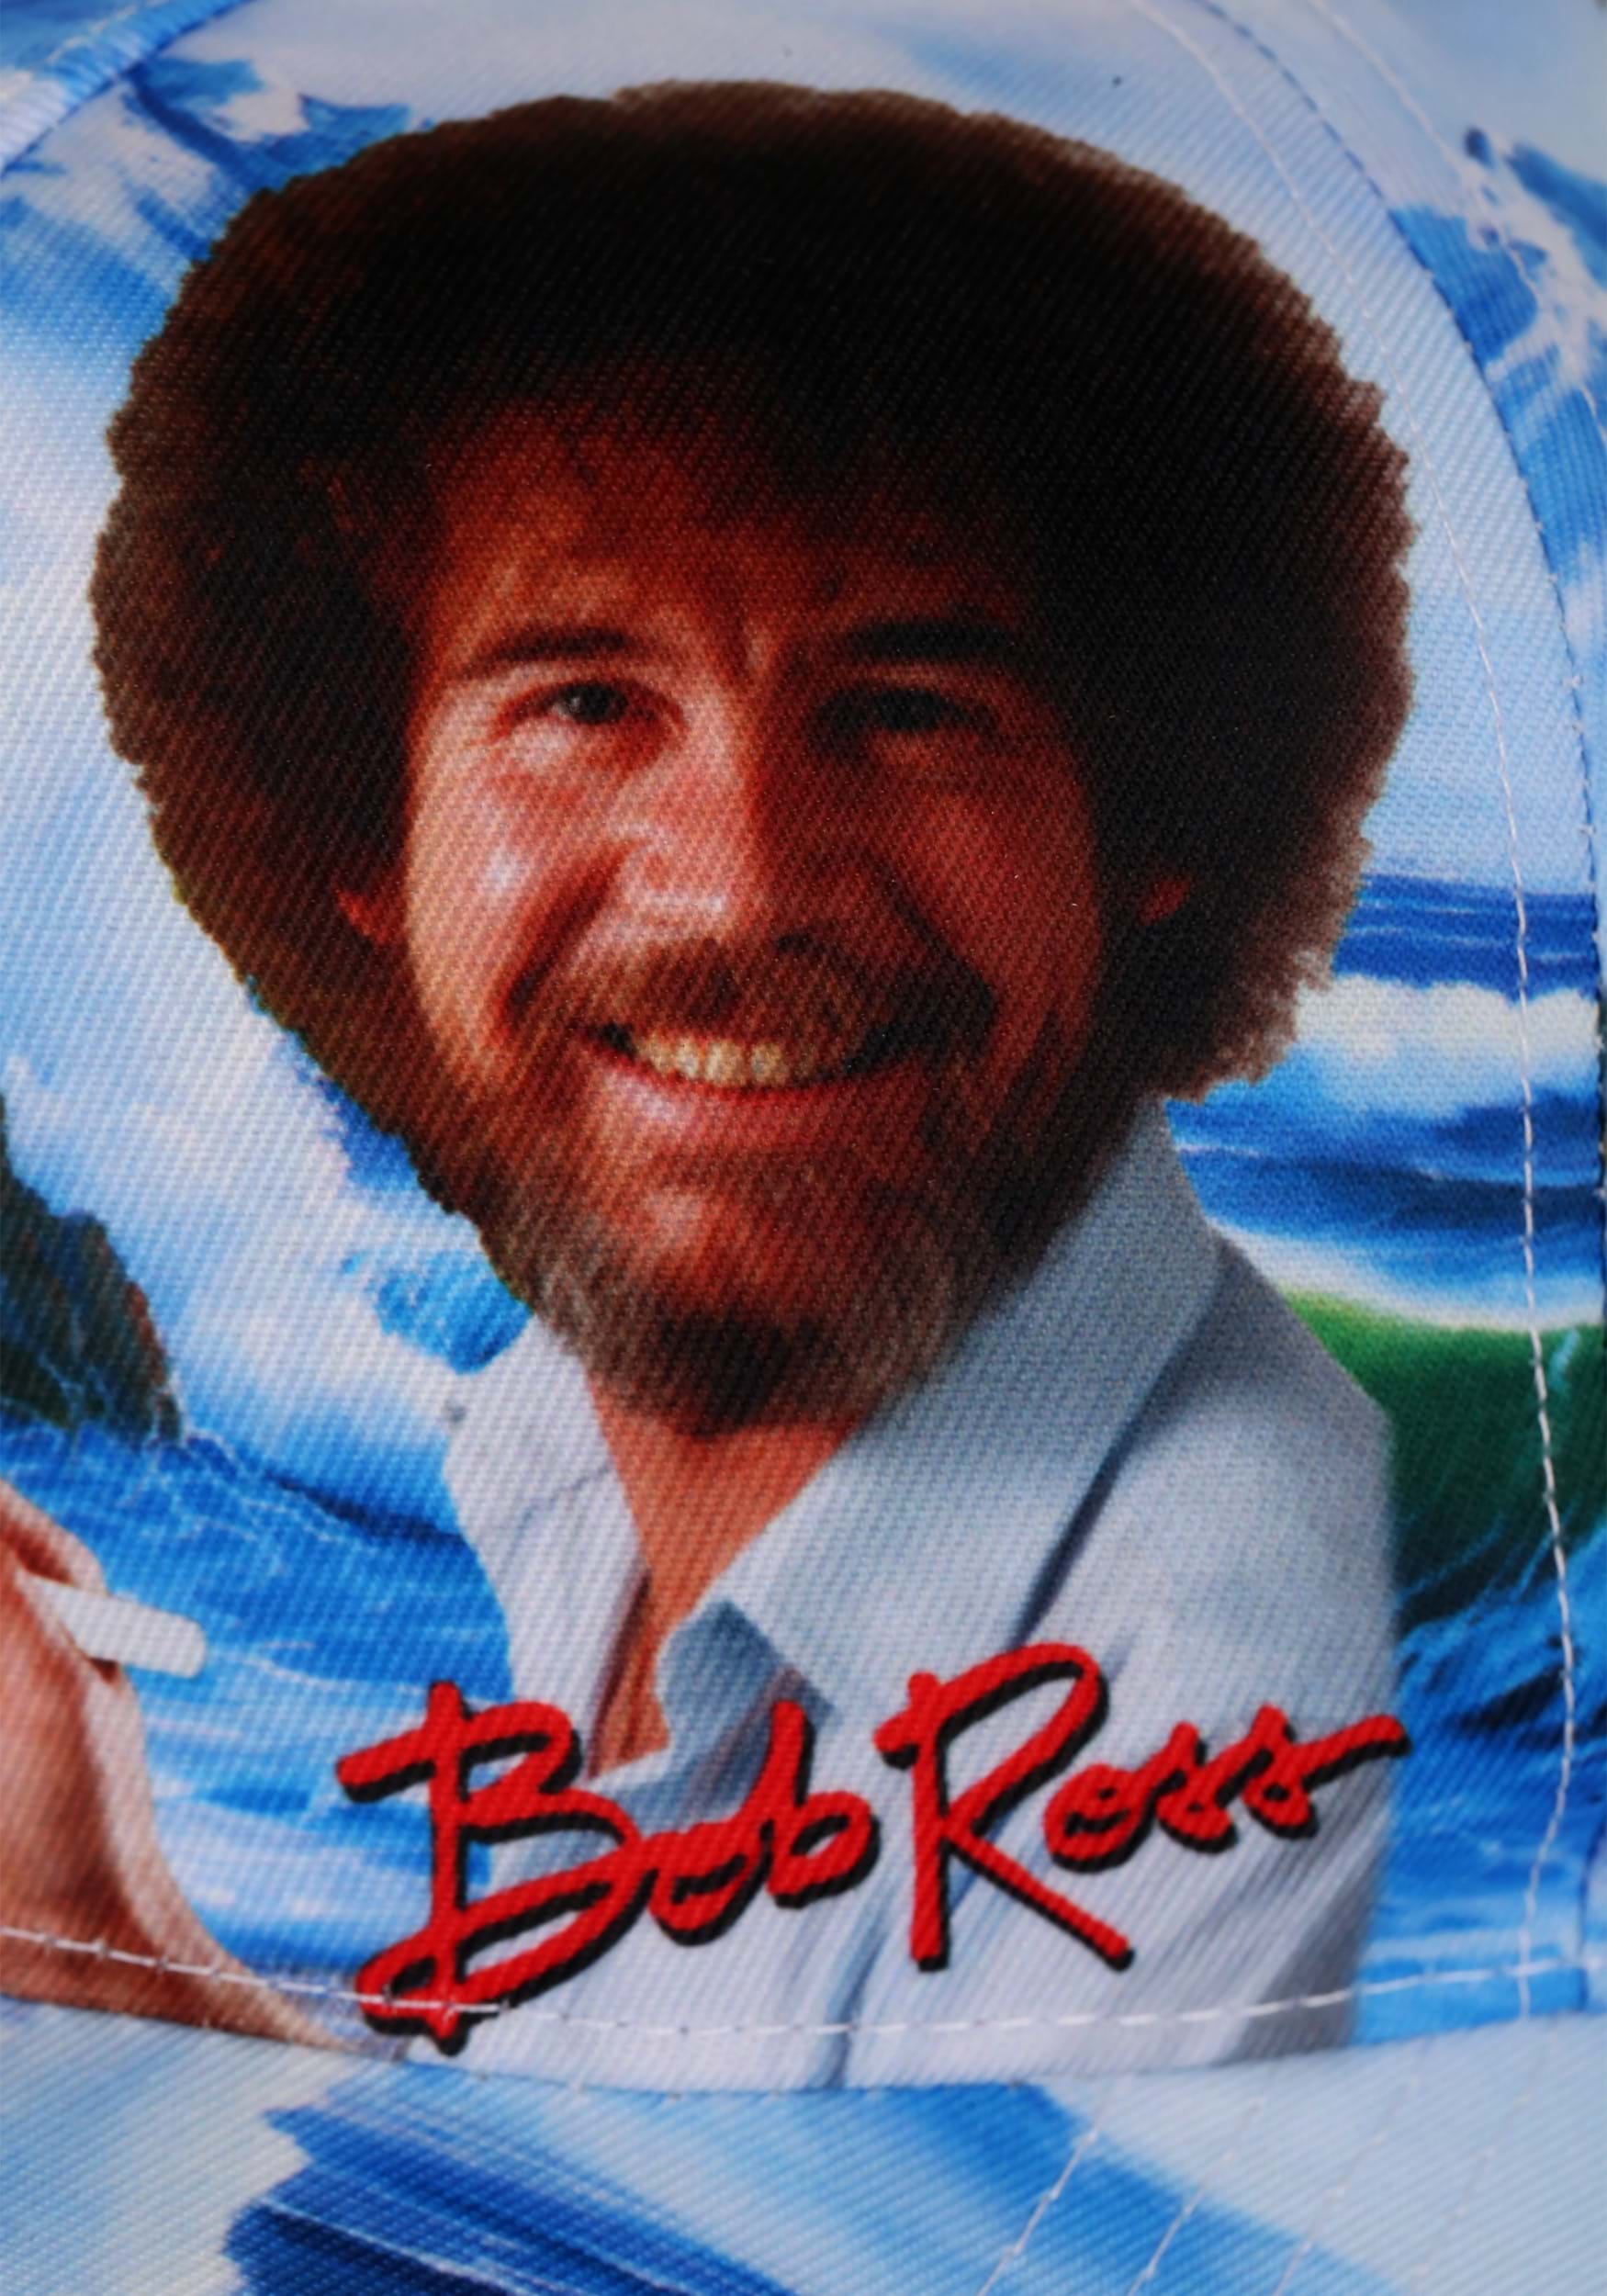 Bob Ross Painting Baseball Cap